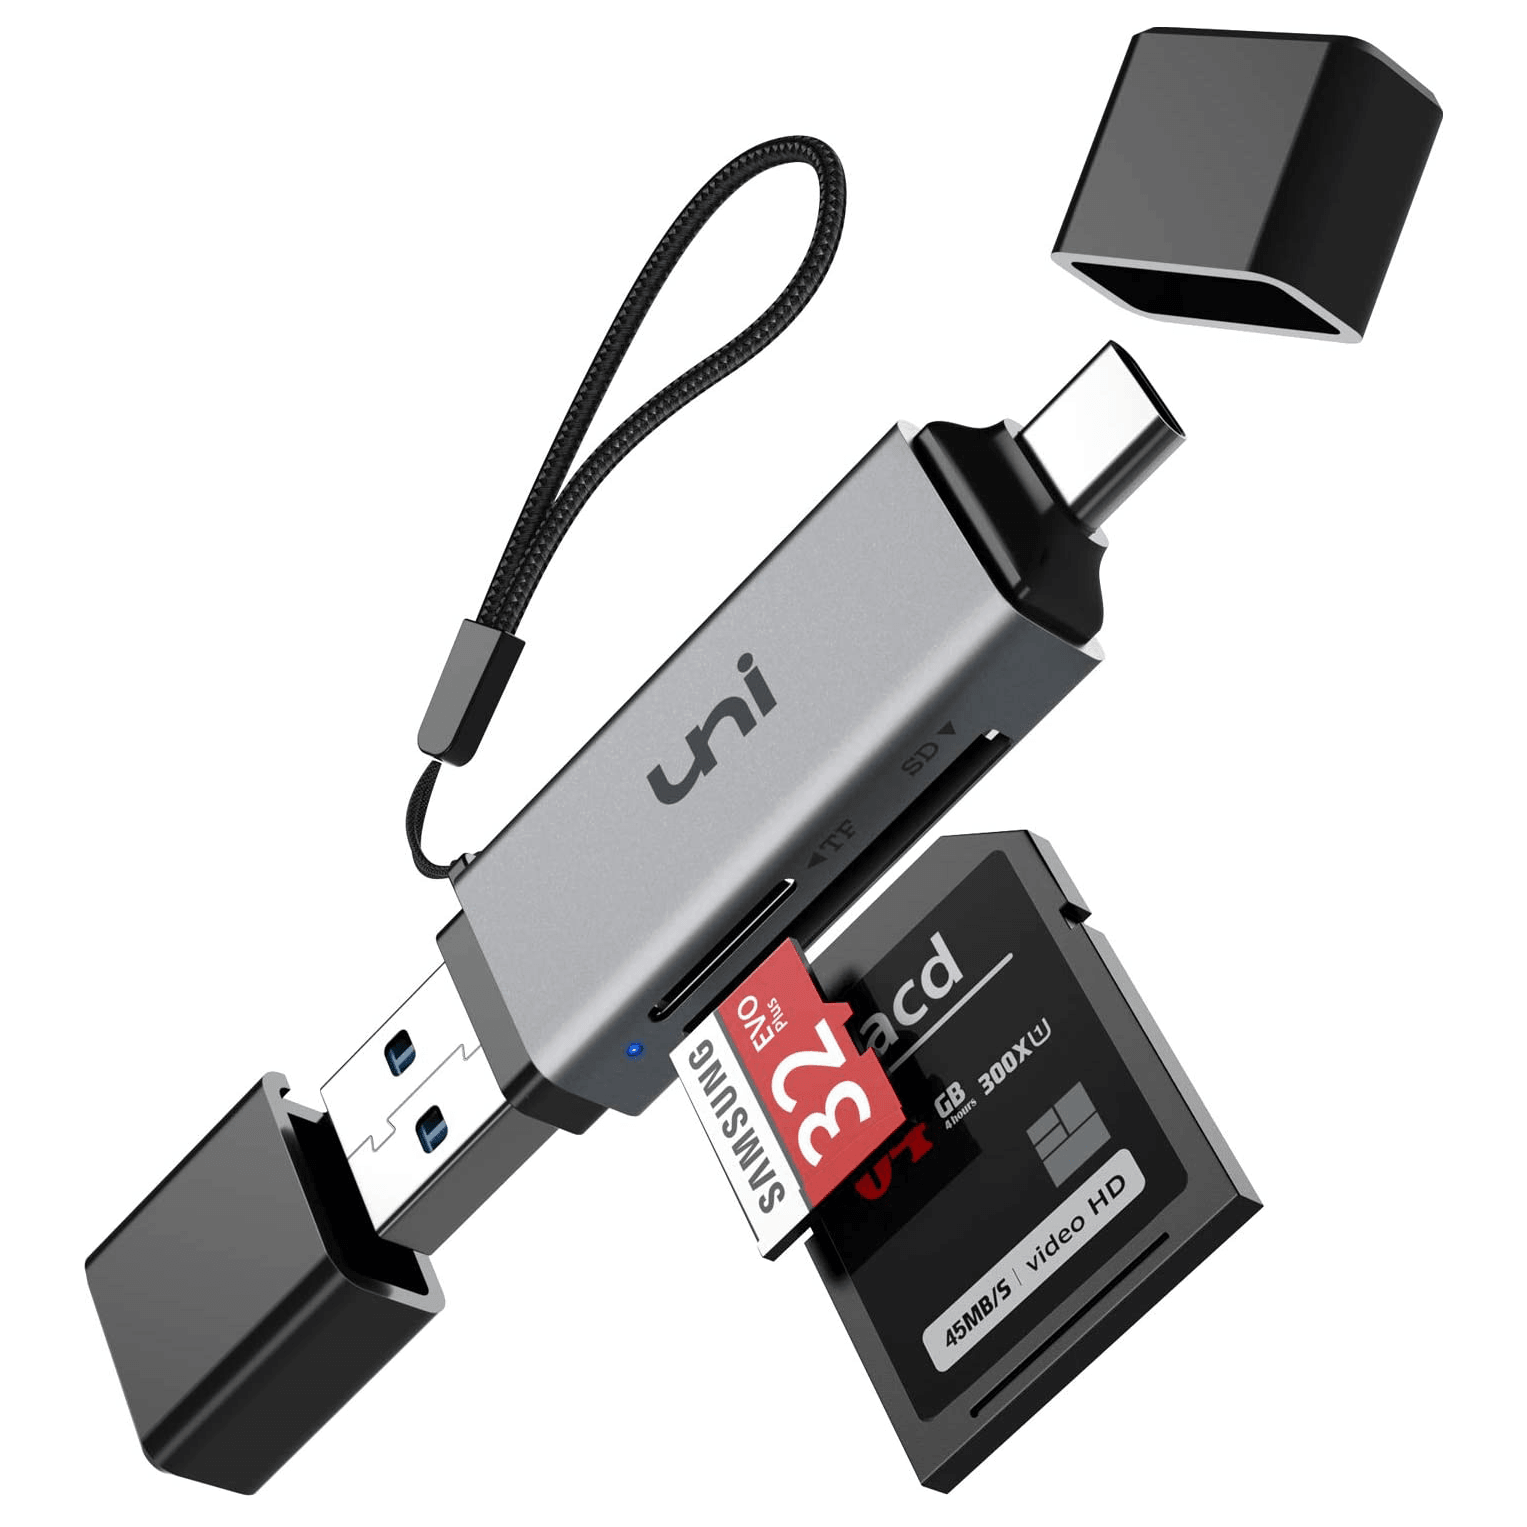 Lector de tarjetas USB y USB-C SD/MicroSD Adaptador de tarjeta SD, UHS-I